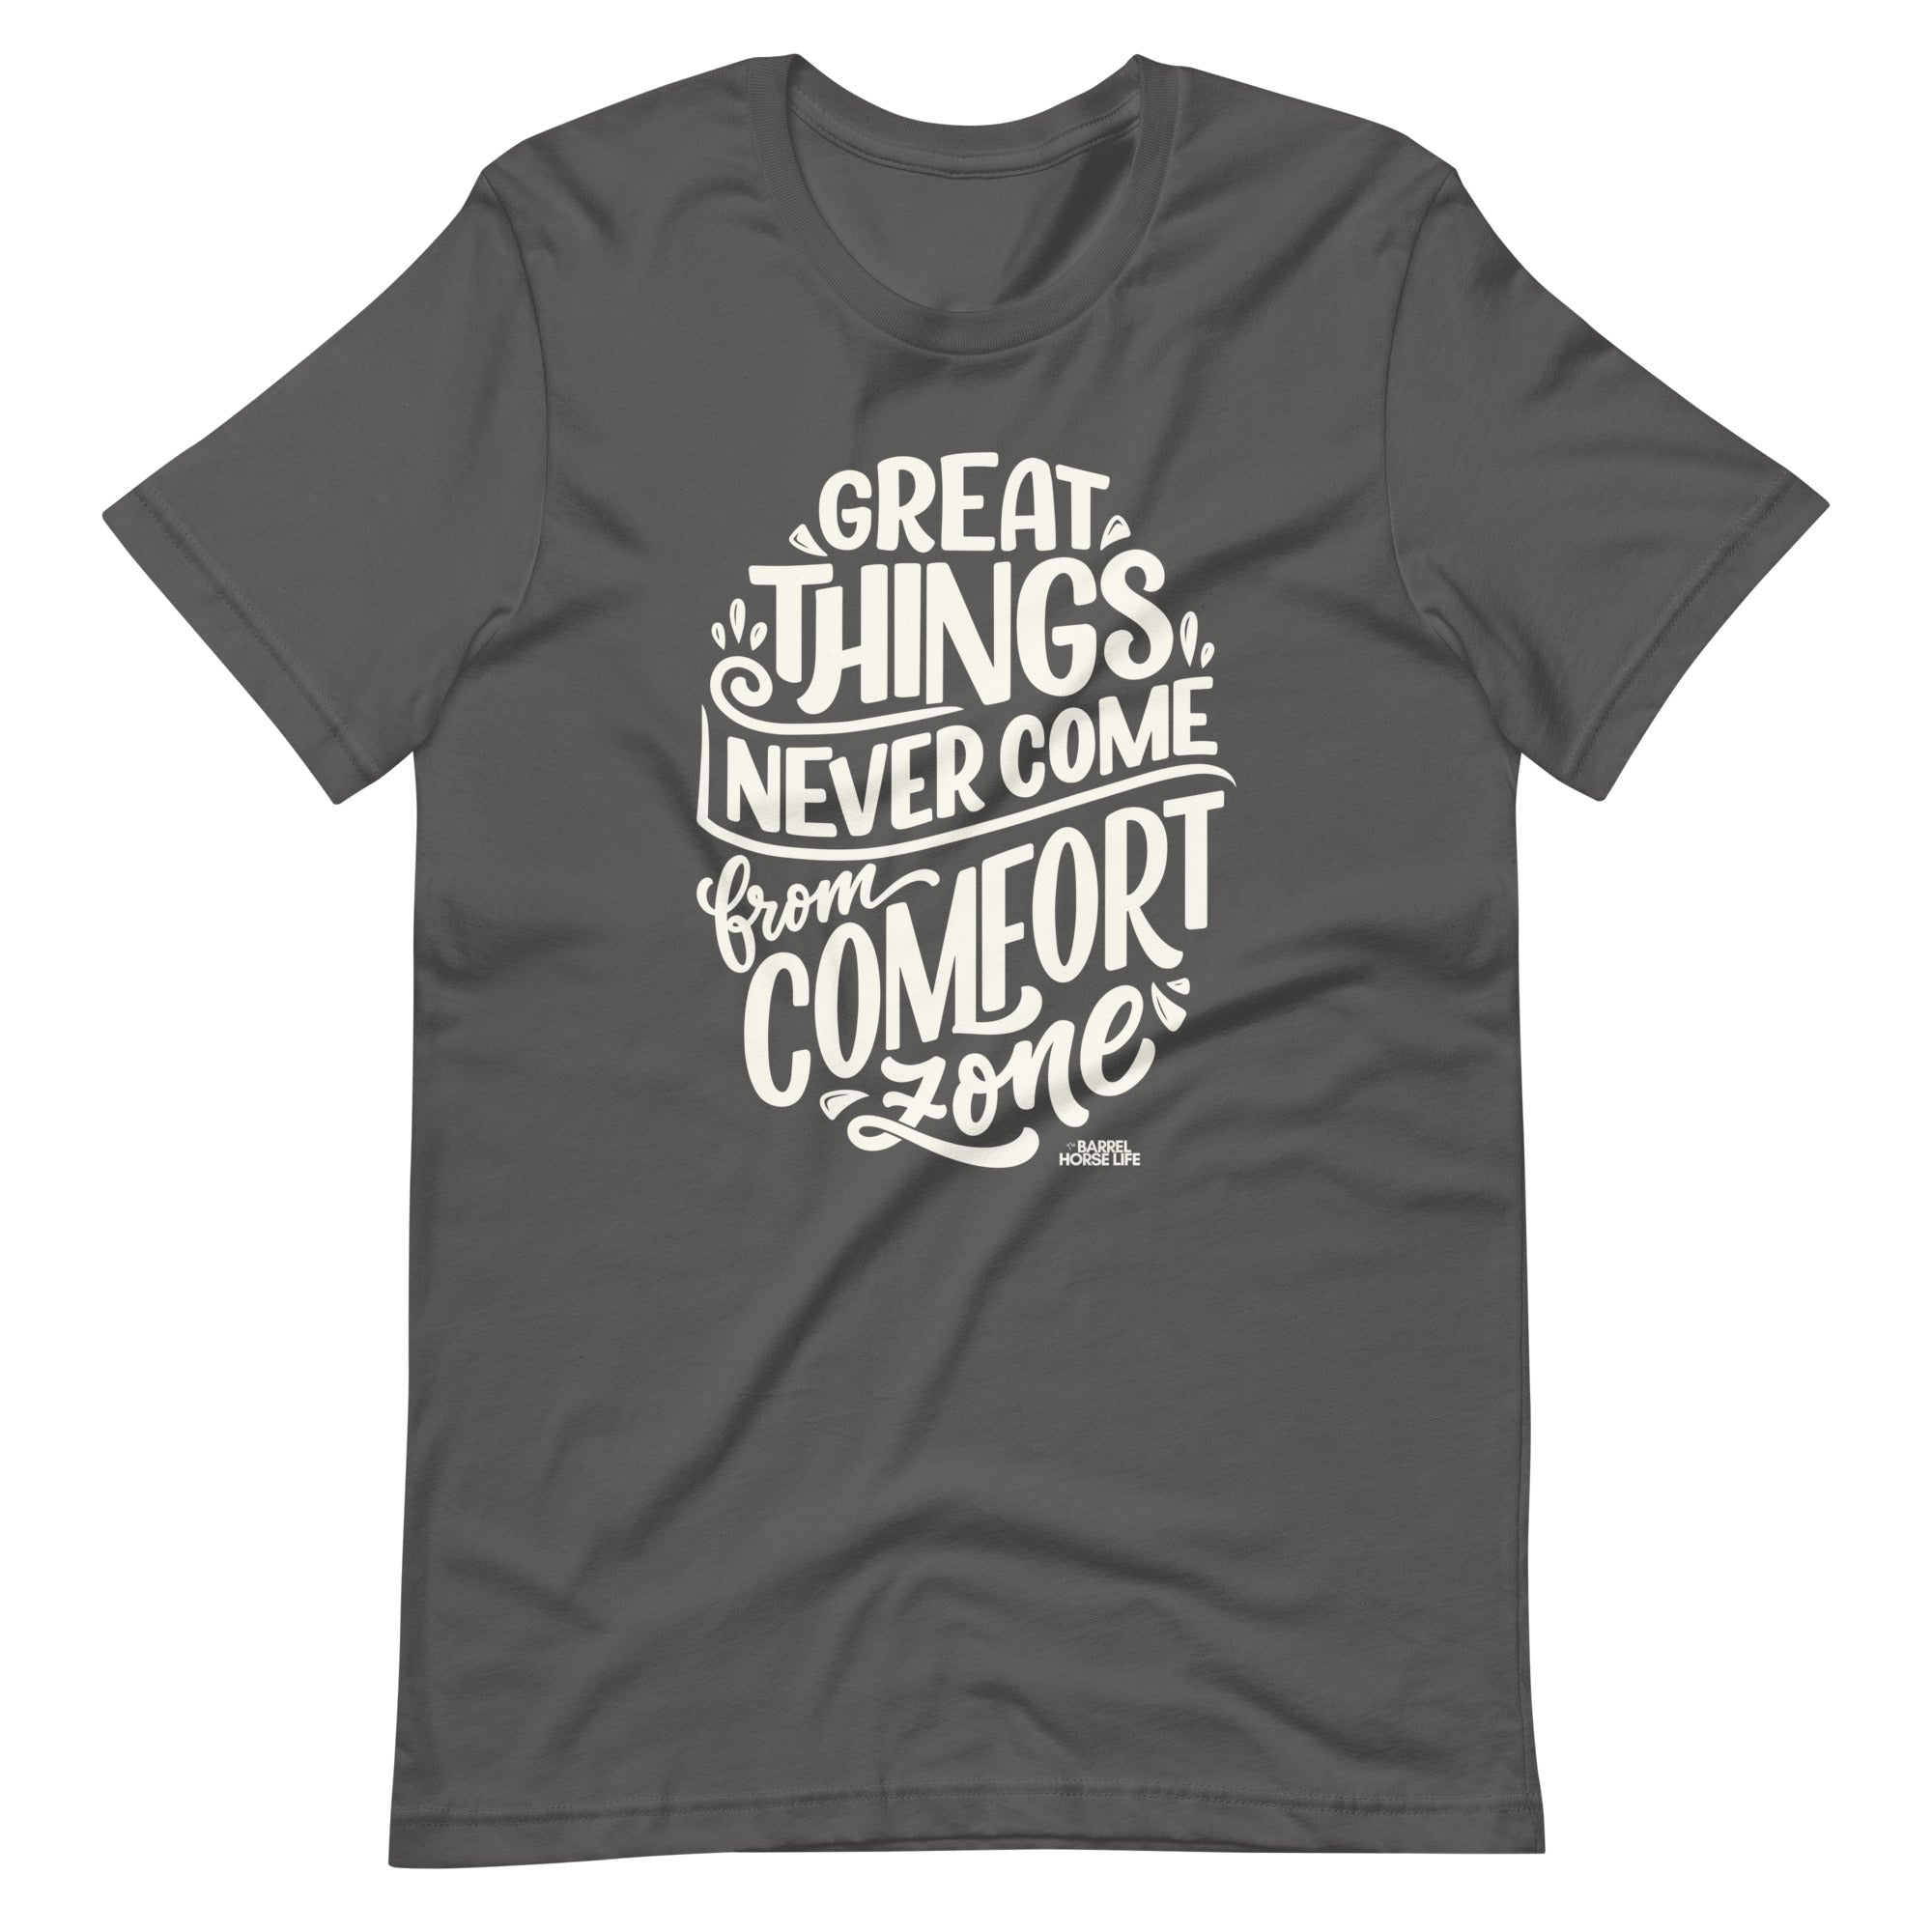 Comfort Zone T-Shirt